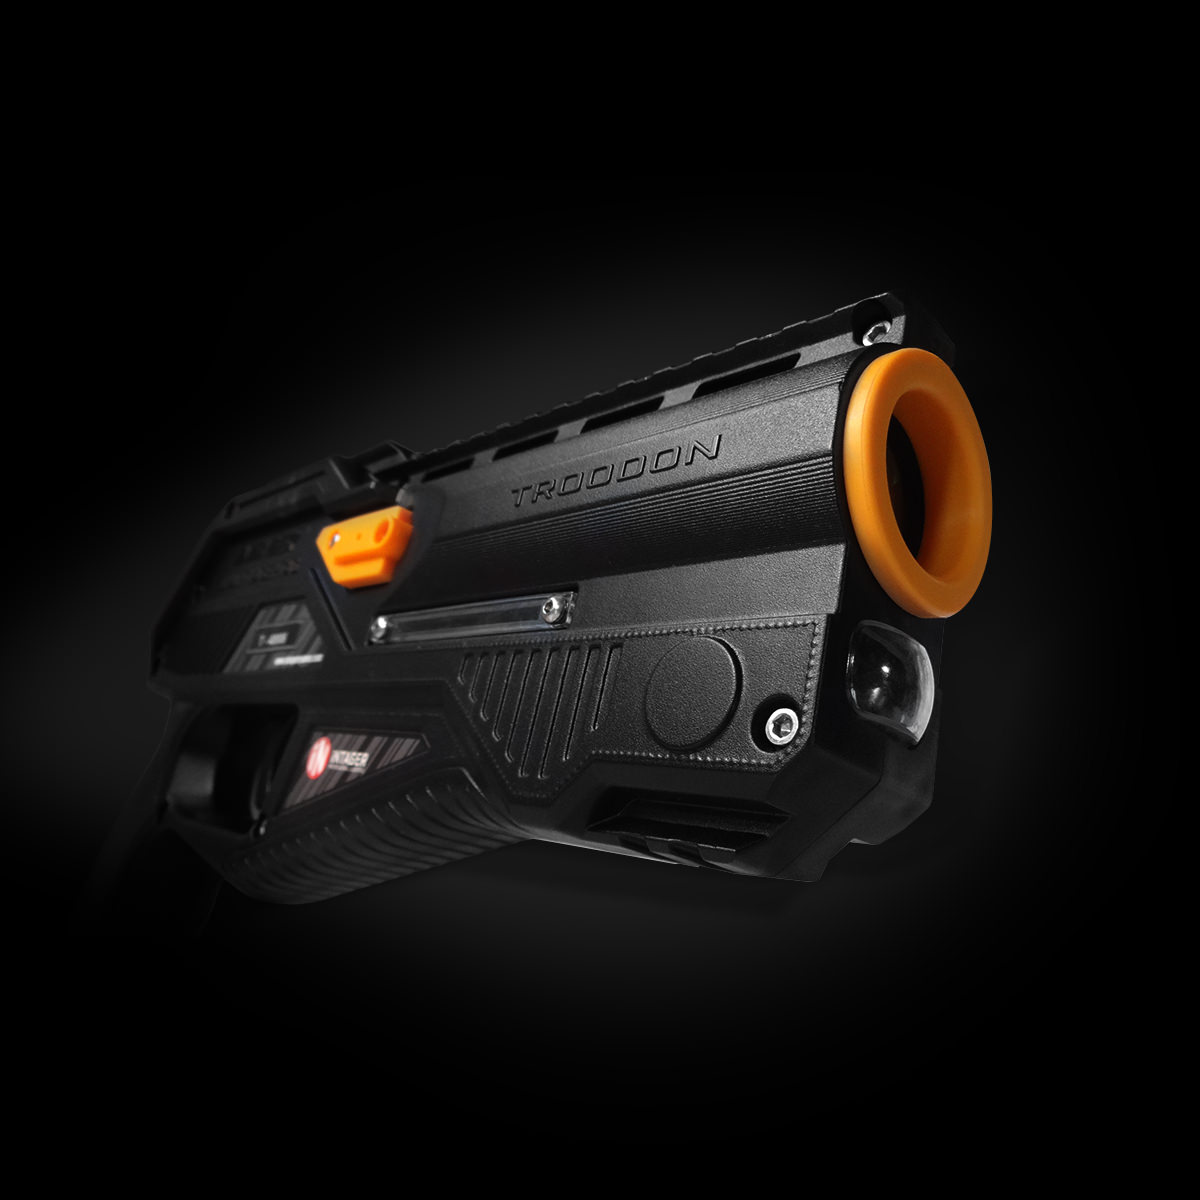 Troodon laser tag pistol